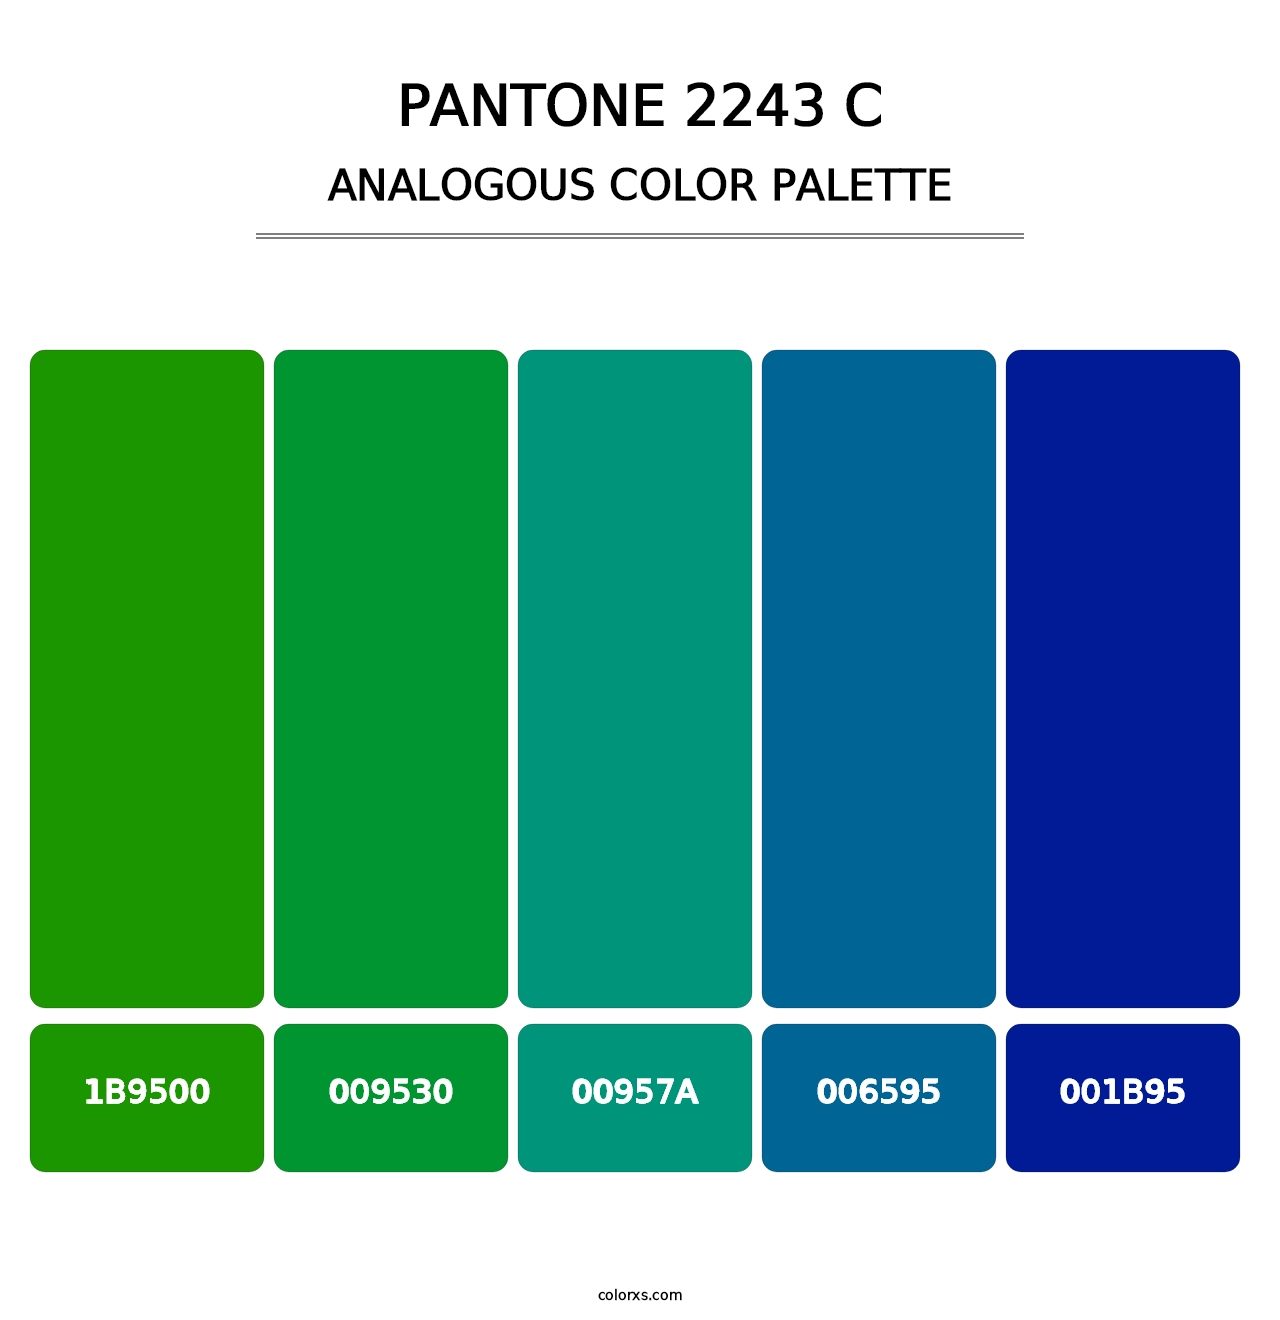 PANTONE 2243 C - Analogous Color Palette